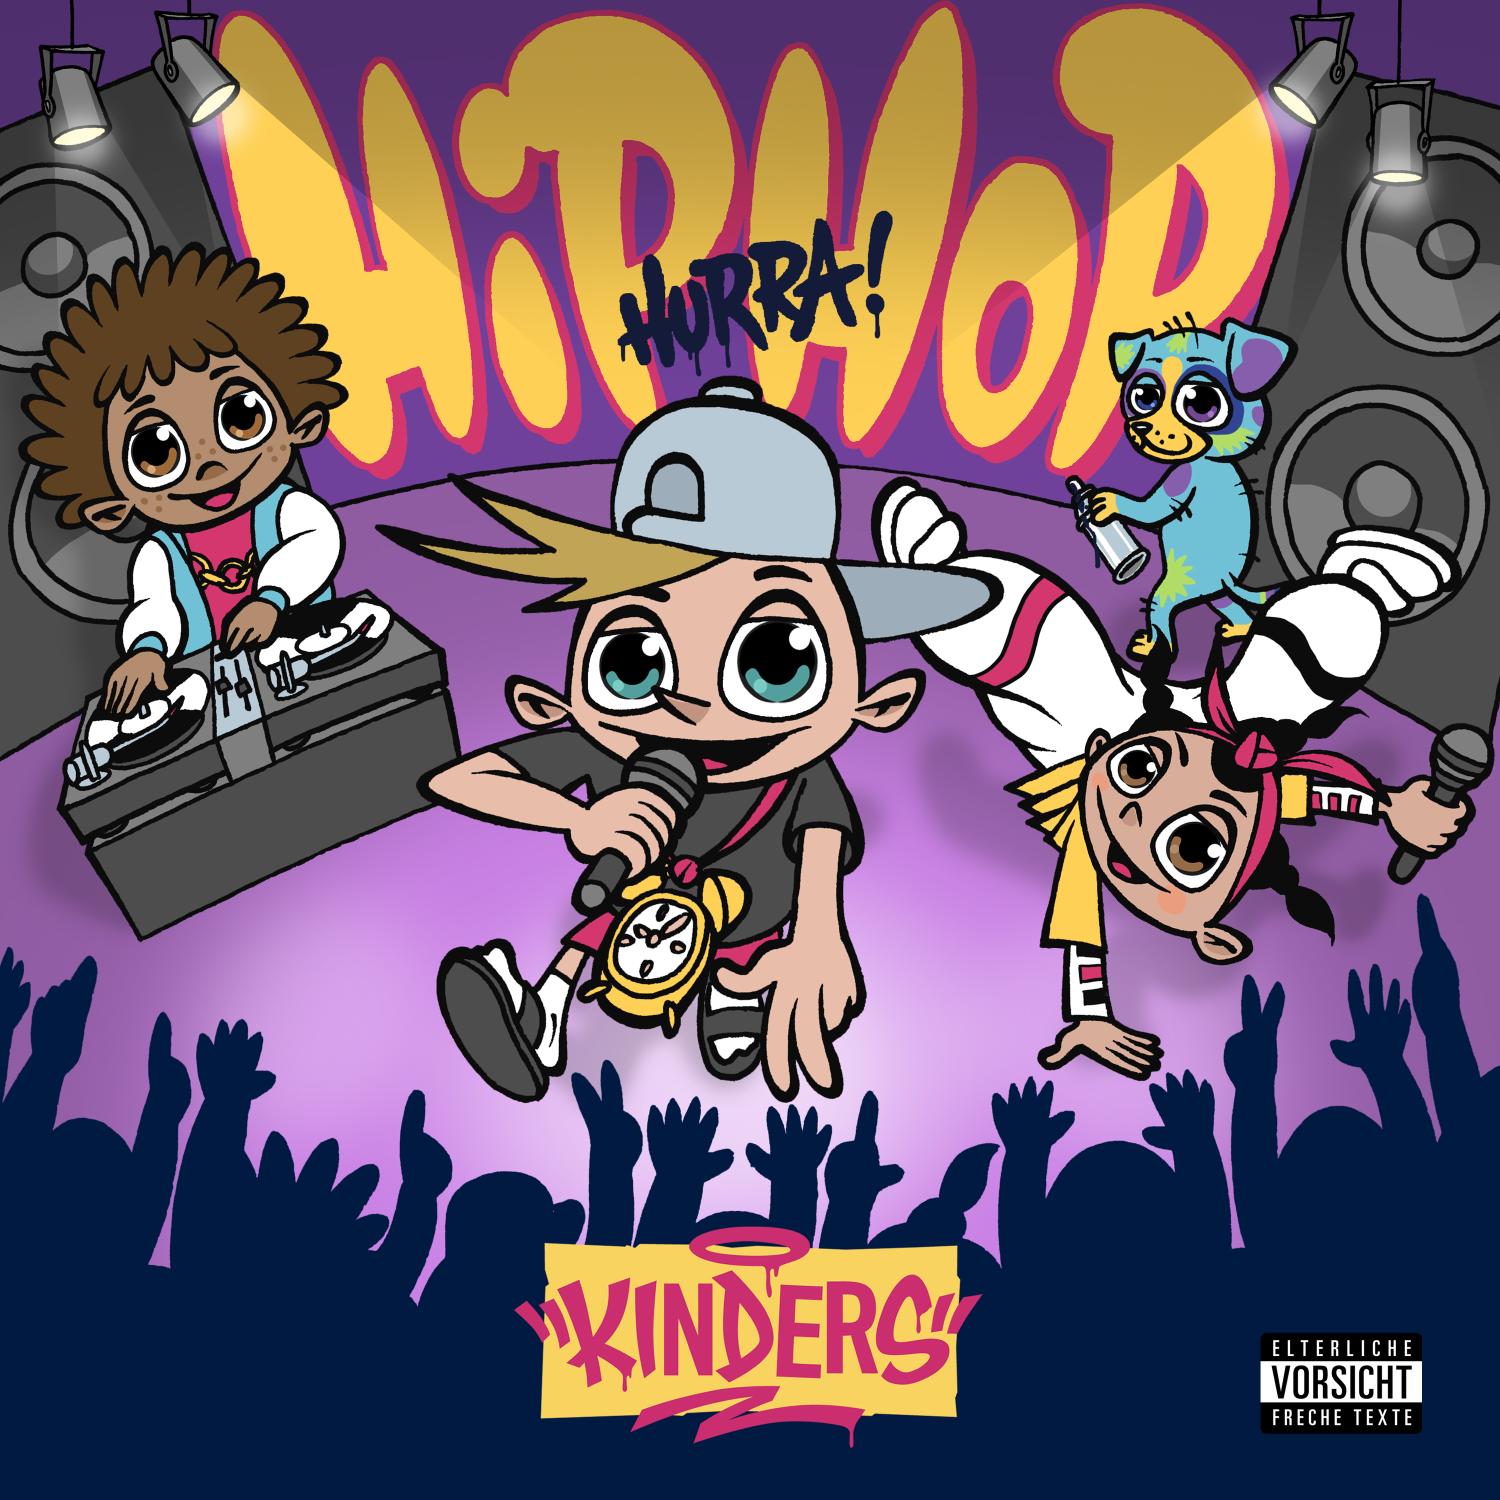 KINDERS: Hip Hop Hurra